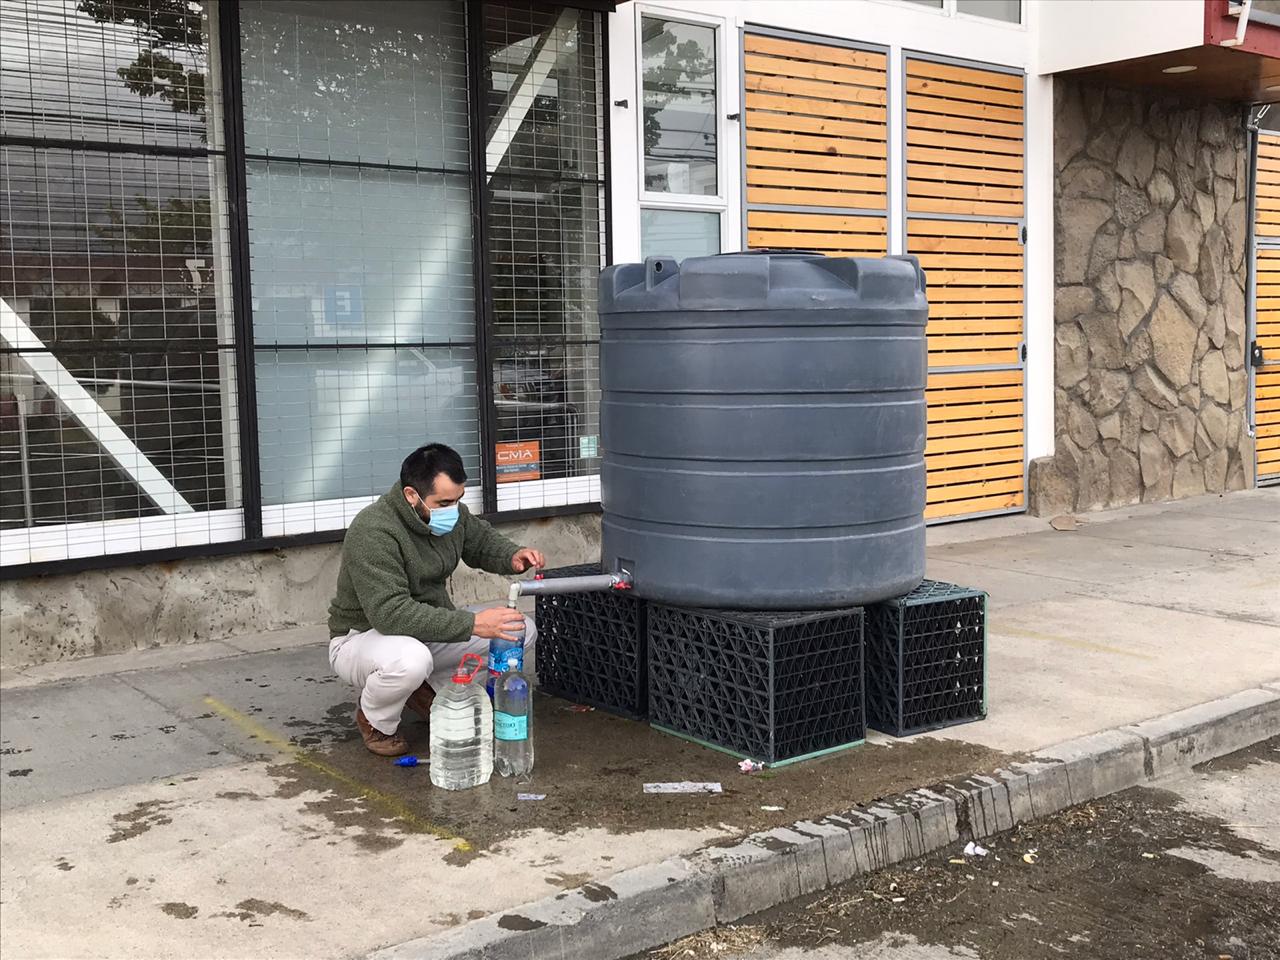 Alimentadora de agua potable afectada por trabajos de constructora ajena a Aguas Magallanes fue repuesta por la sanitaria